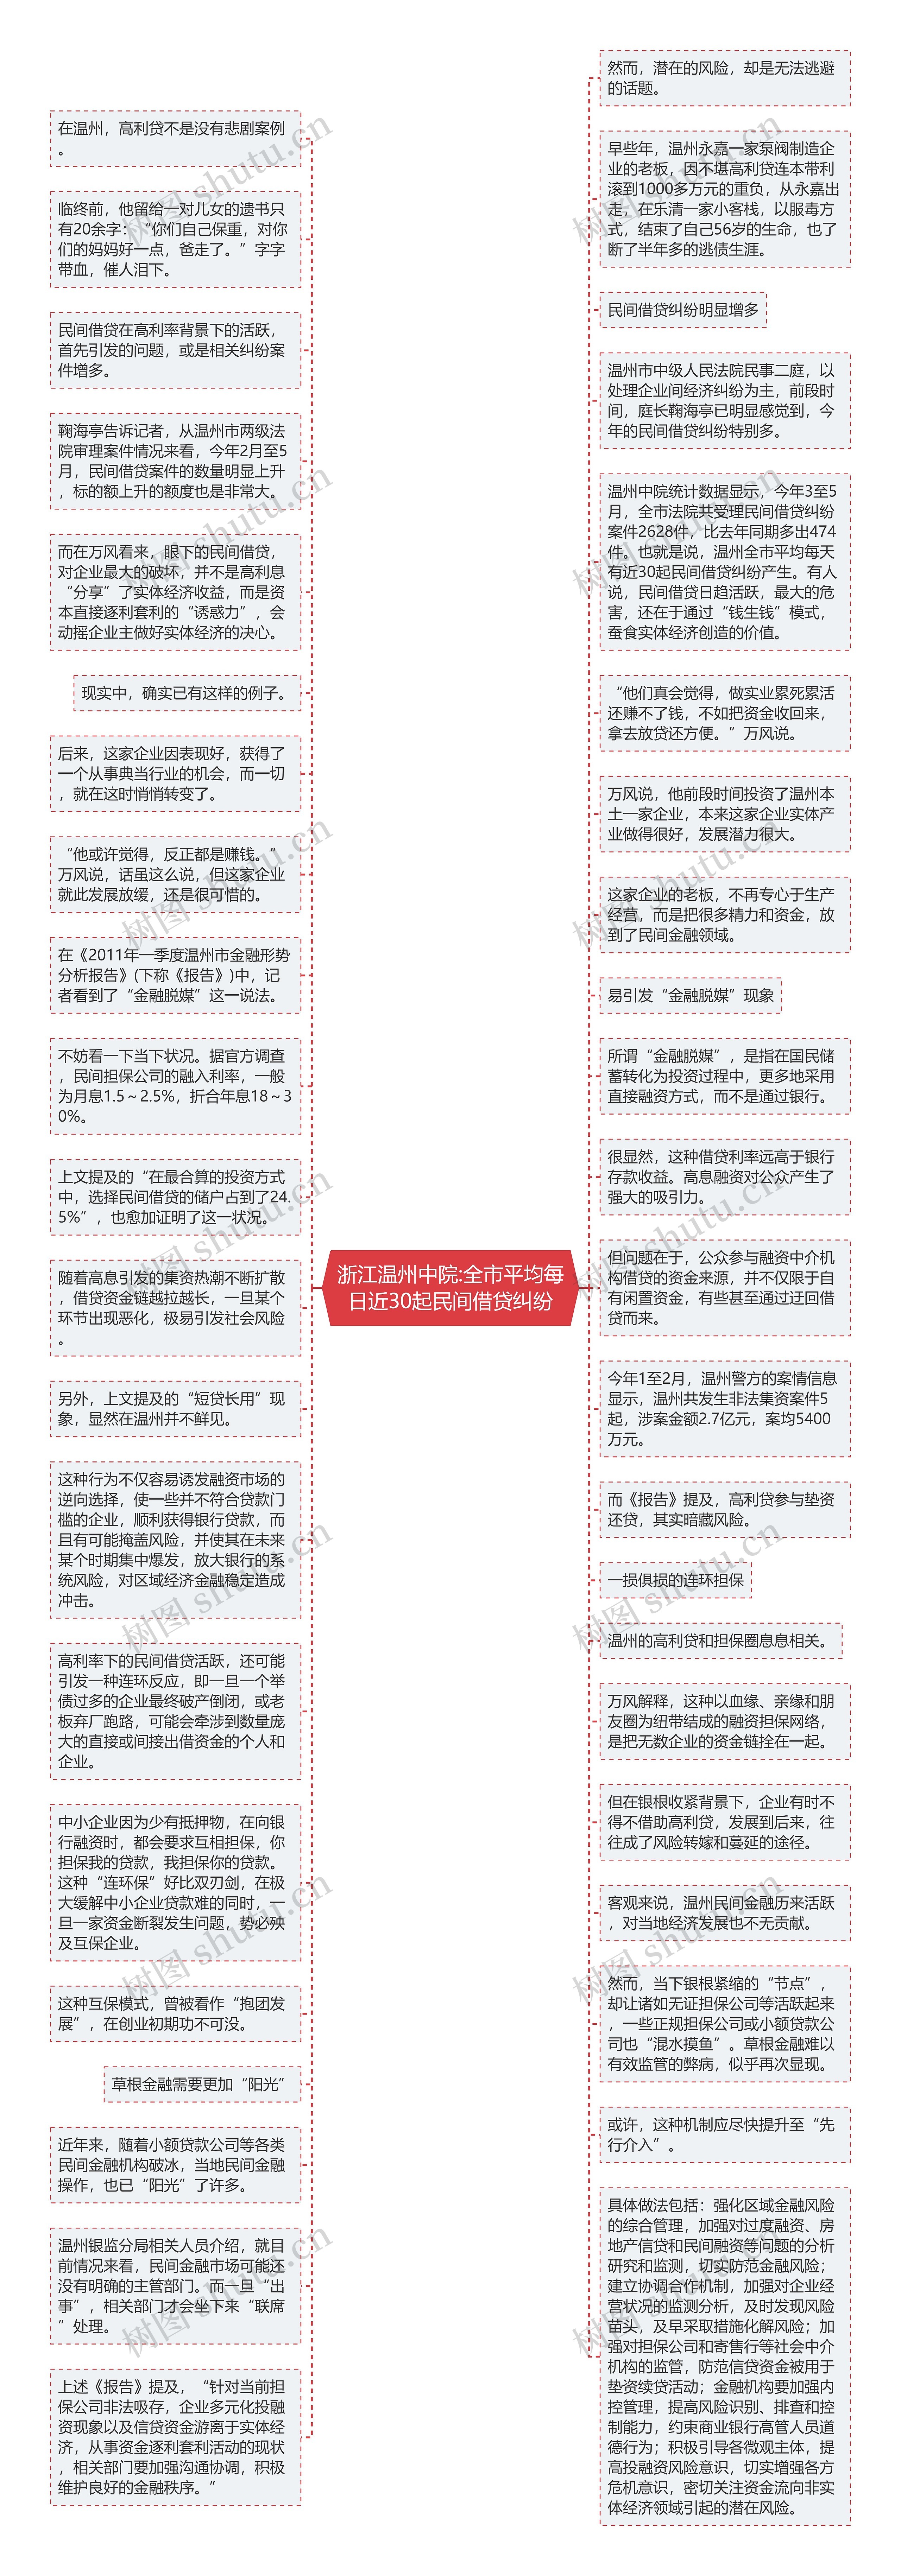 浙江温州中院:全市平均每日近30起民间借贷纠纷